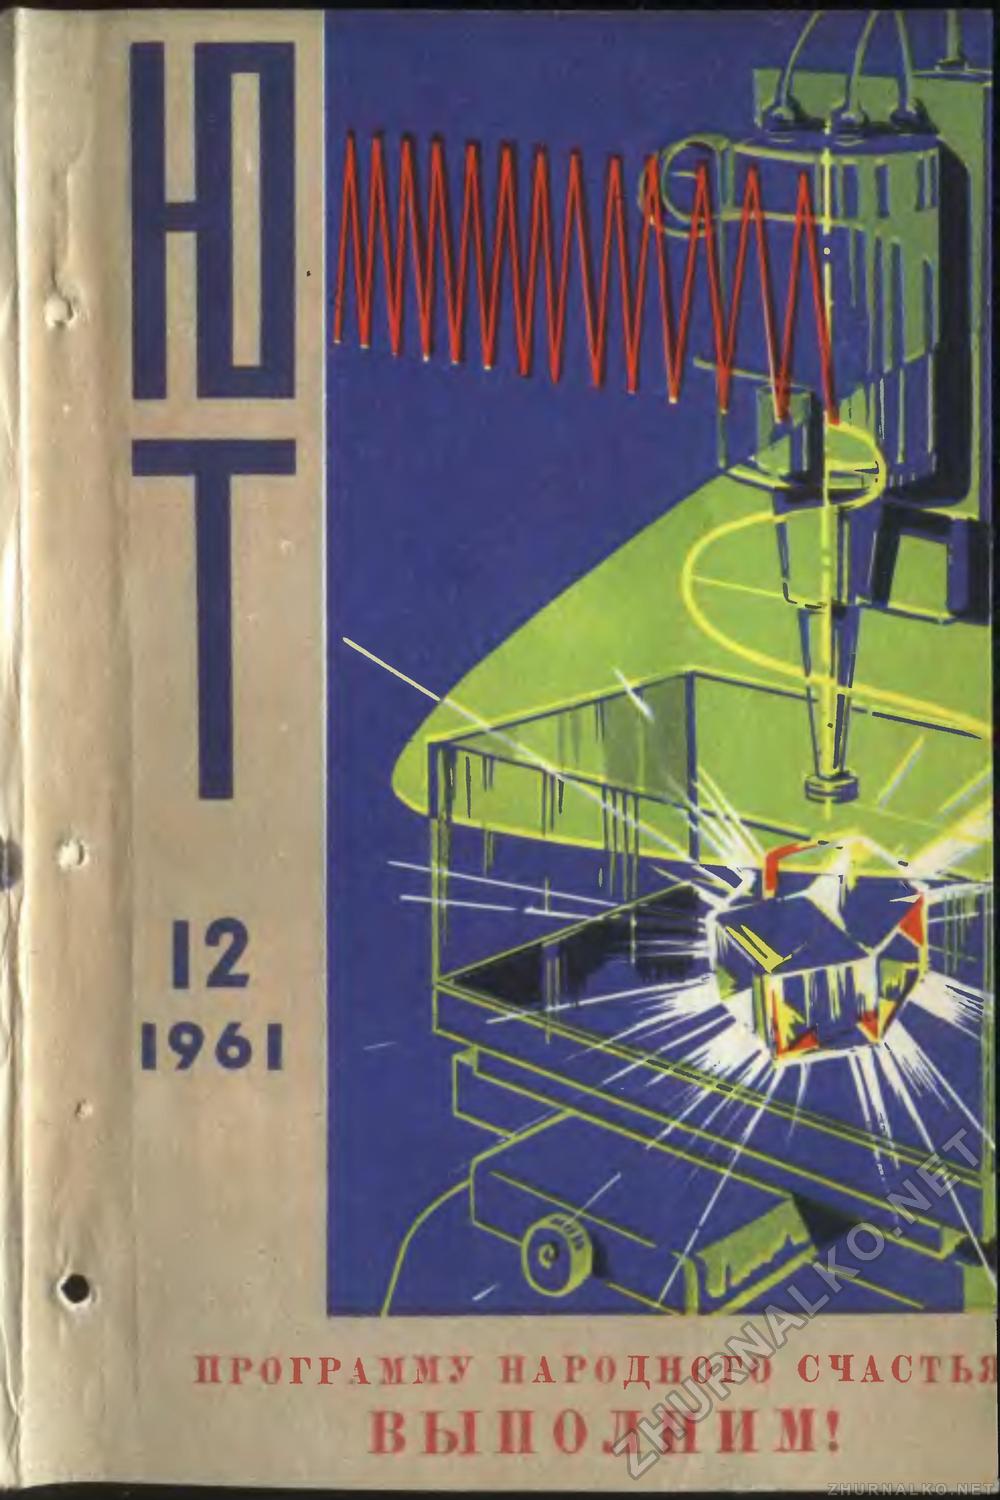   1961-12,  1